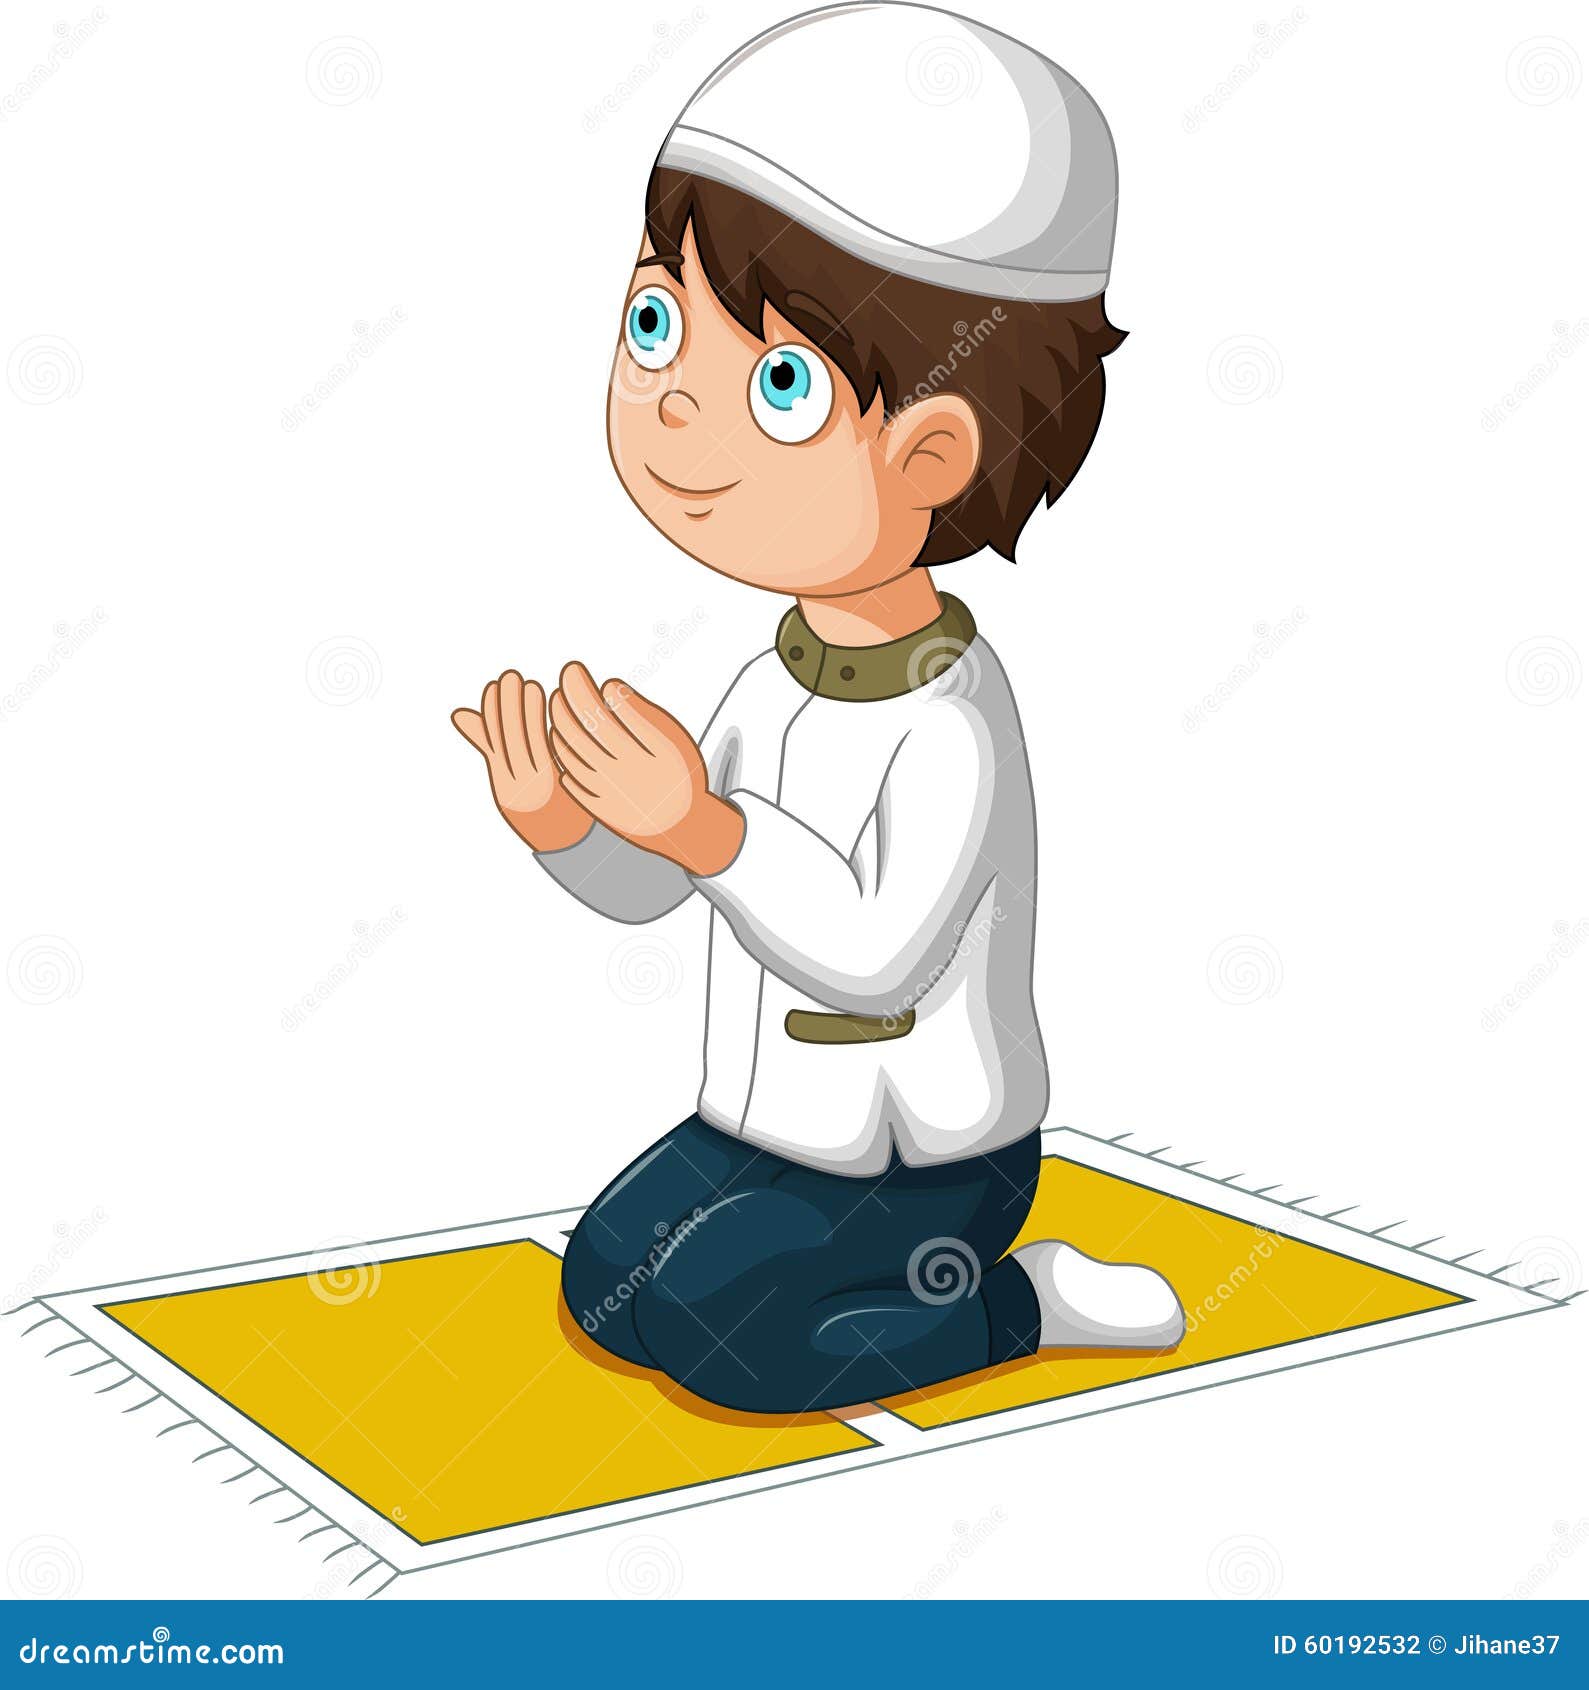 Download 61 Gambar Kartun Orang Berdoa Keren Gratis